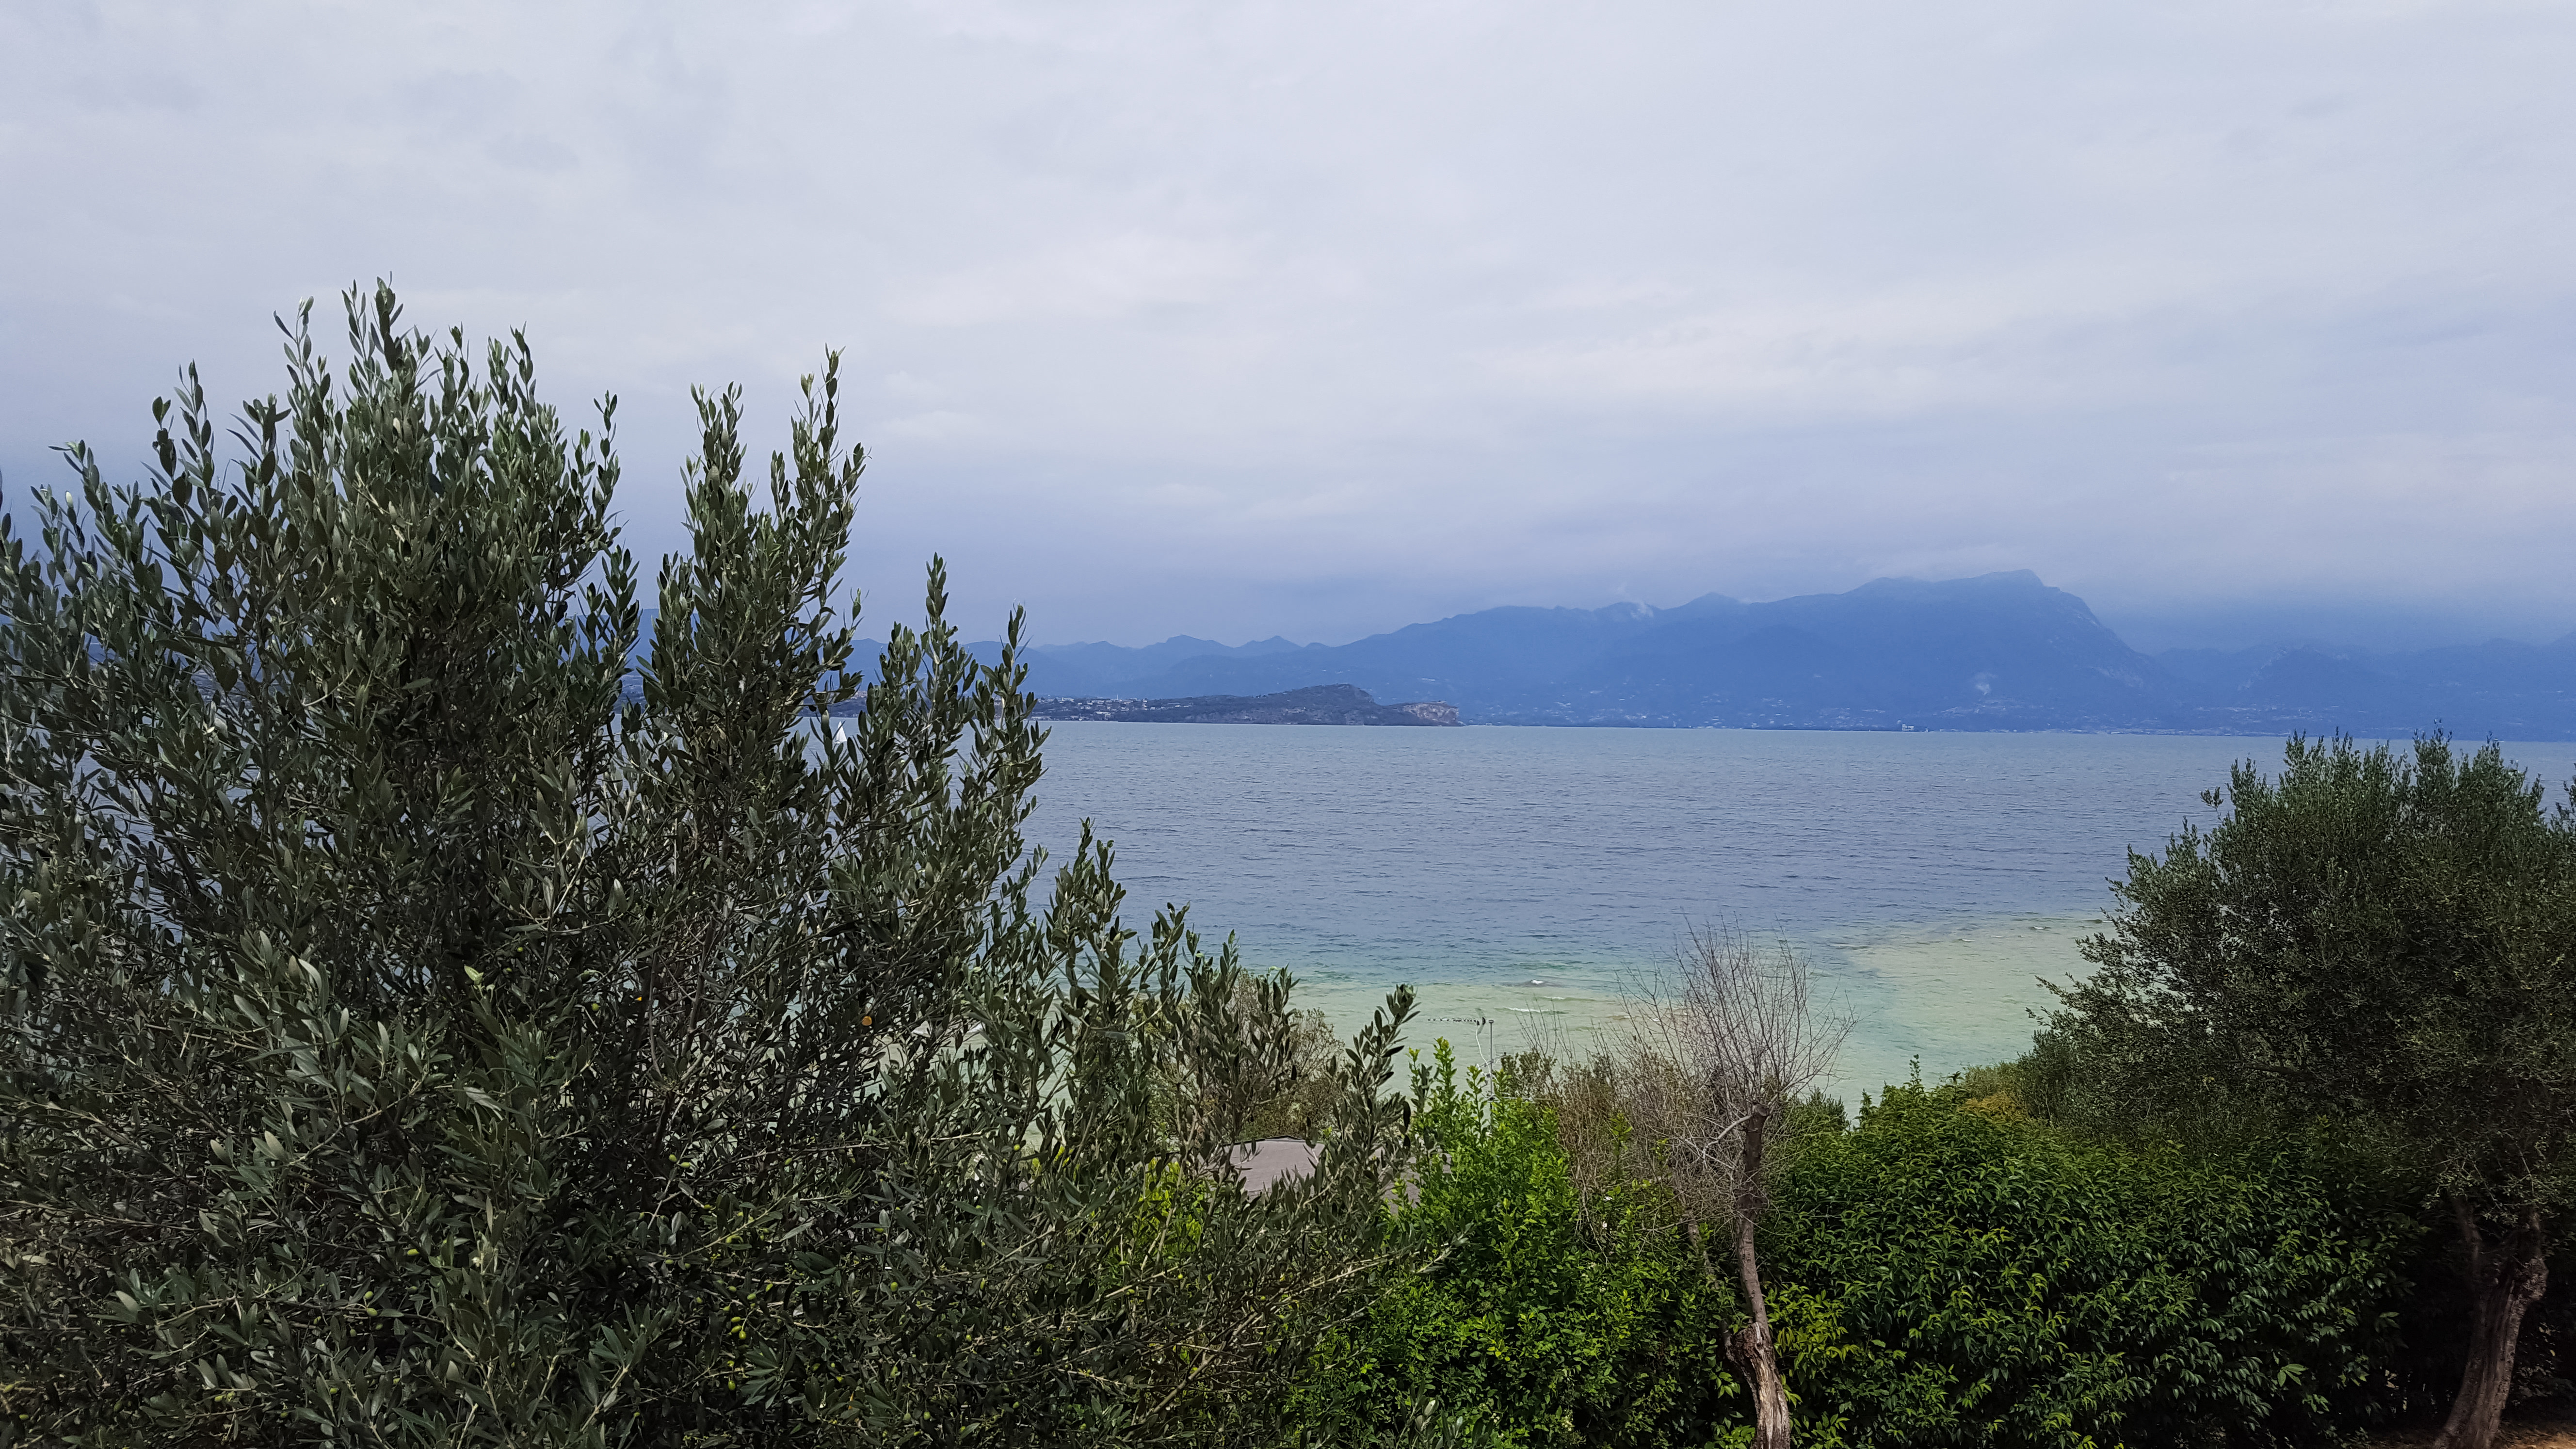 Nivelul de apă foarte scăzut al lacului Garda, Italia, șochează turiștii. „Apa nu mai era acolo” | GALERIE FOTO - Imaginea 5